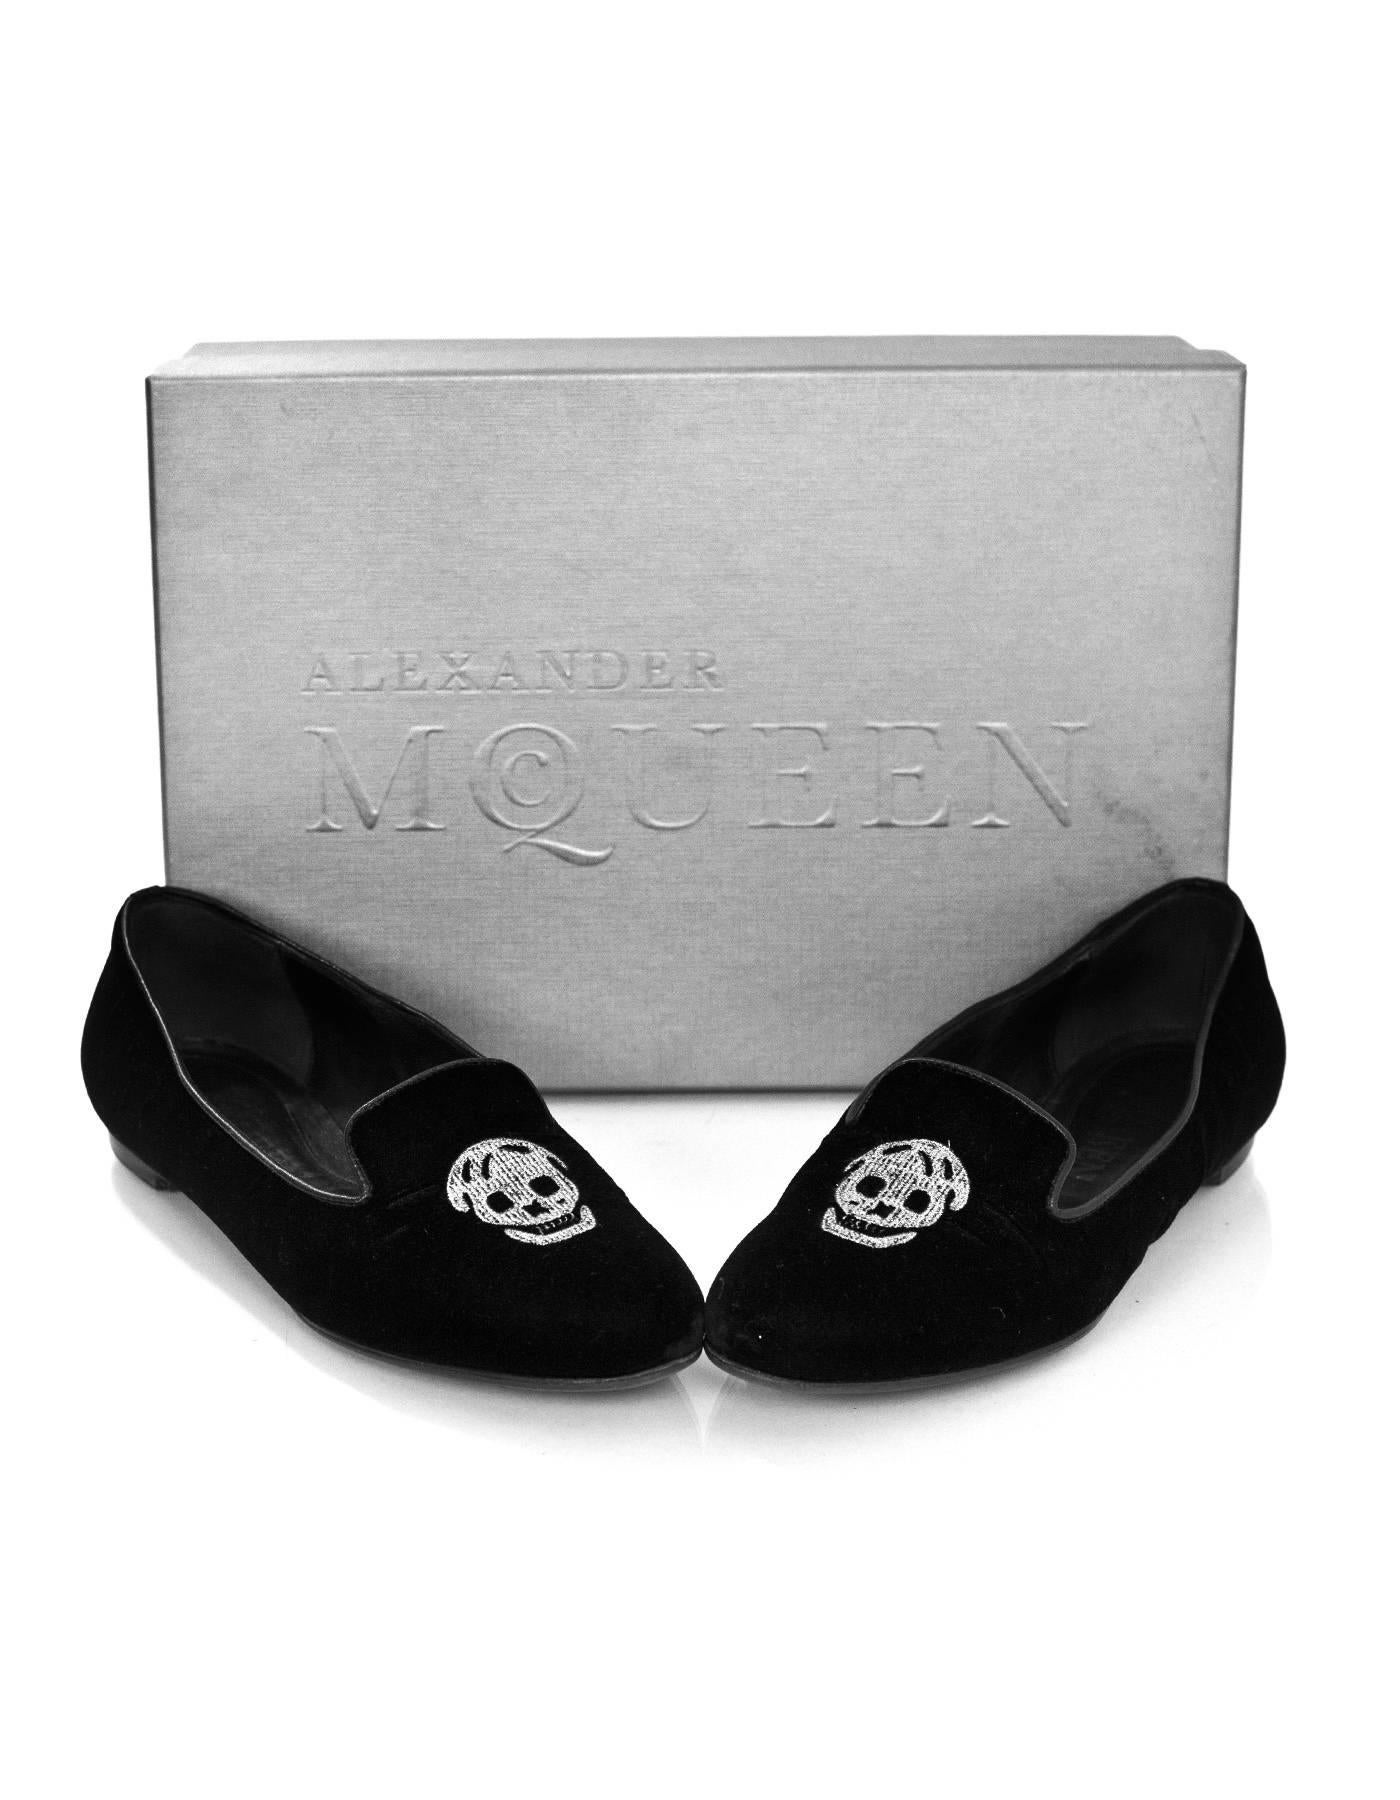 Alexander McQueen Black Velvet Skull Loafers Sz 35.5 rt. $825 1